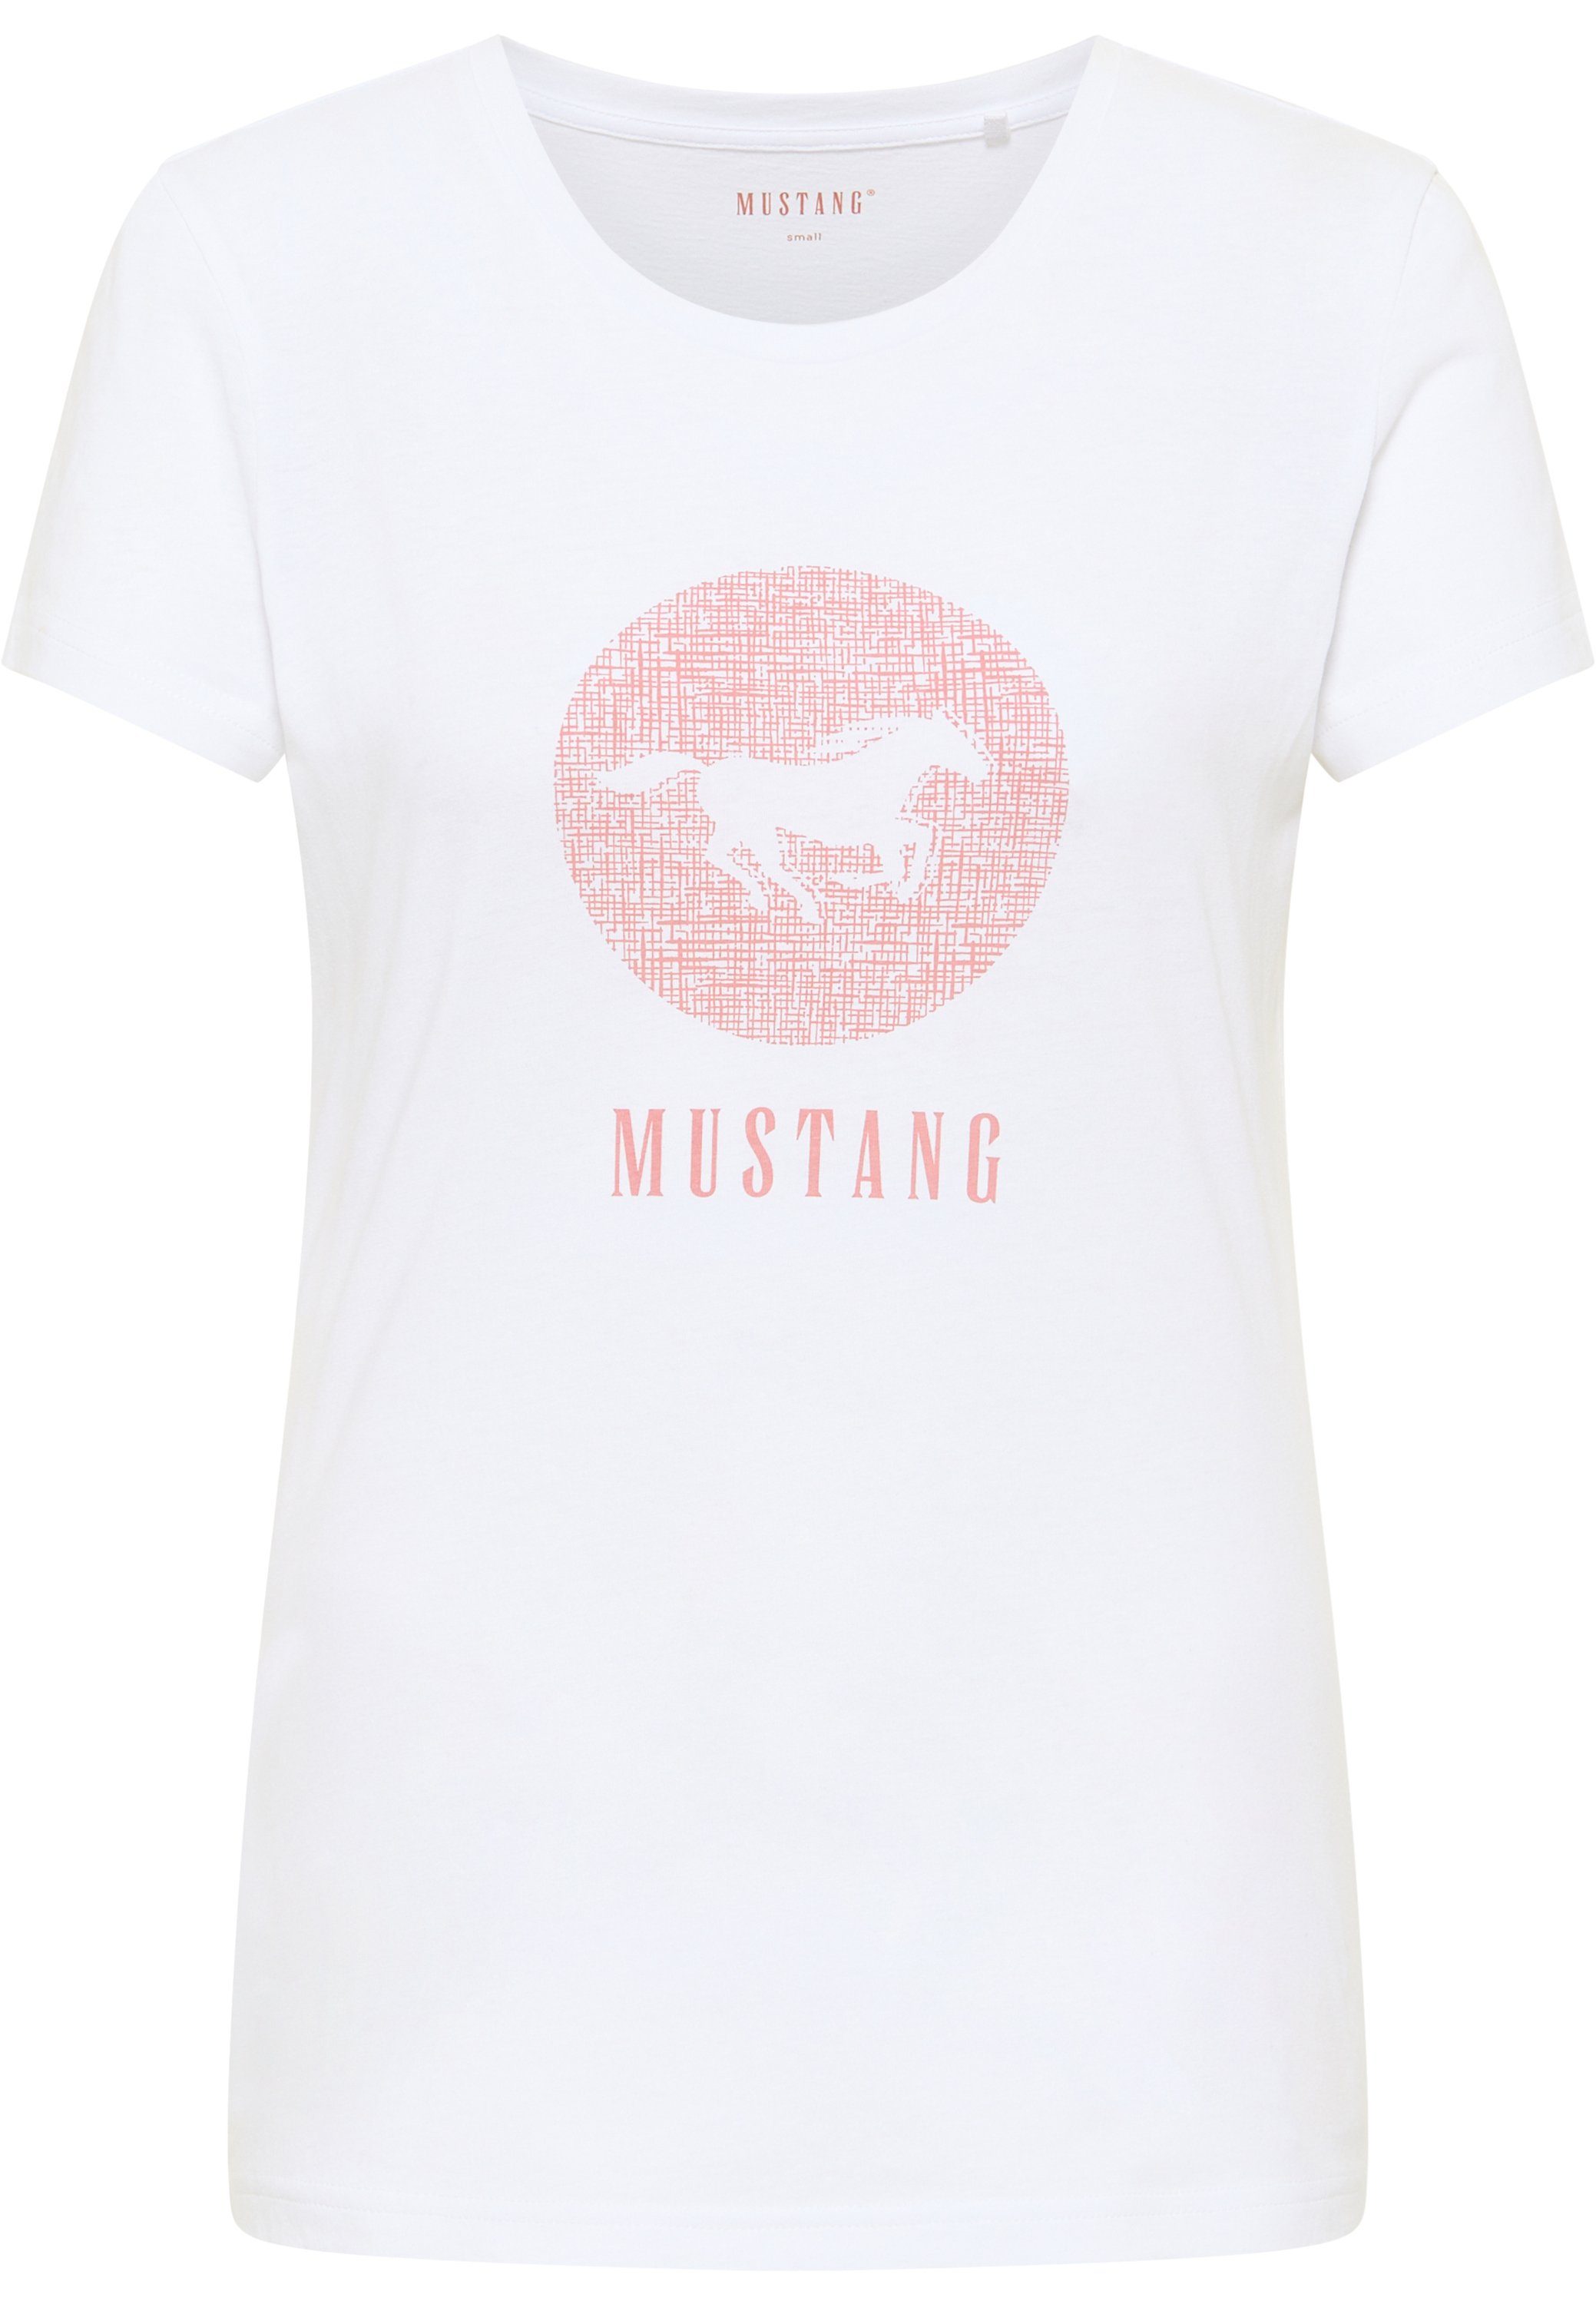 T-Shirt weiß Print-Shirt Kurzarmshirt Mustang MUSTANG